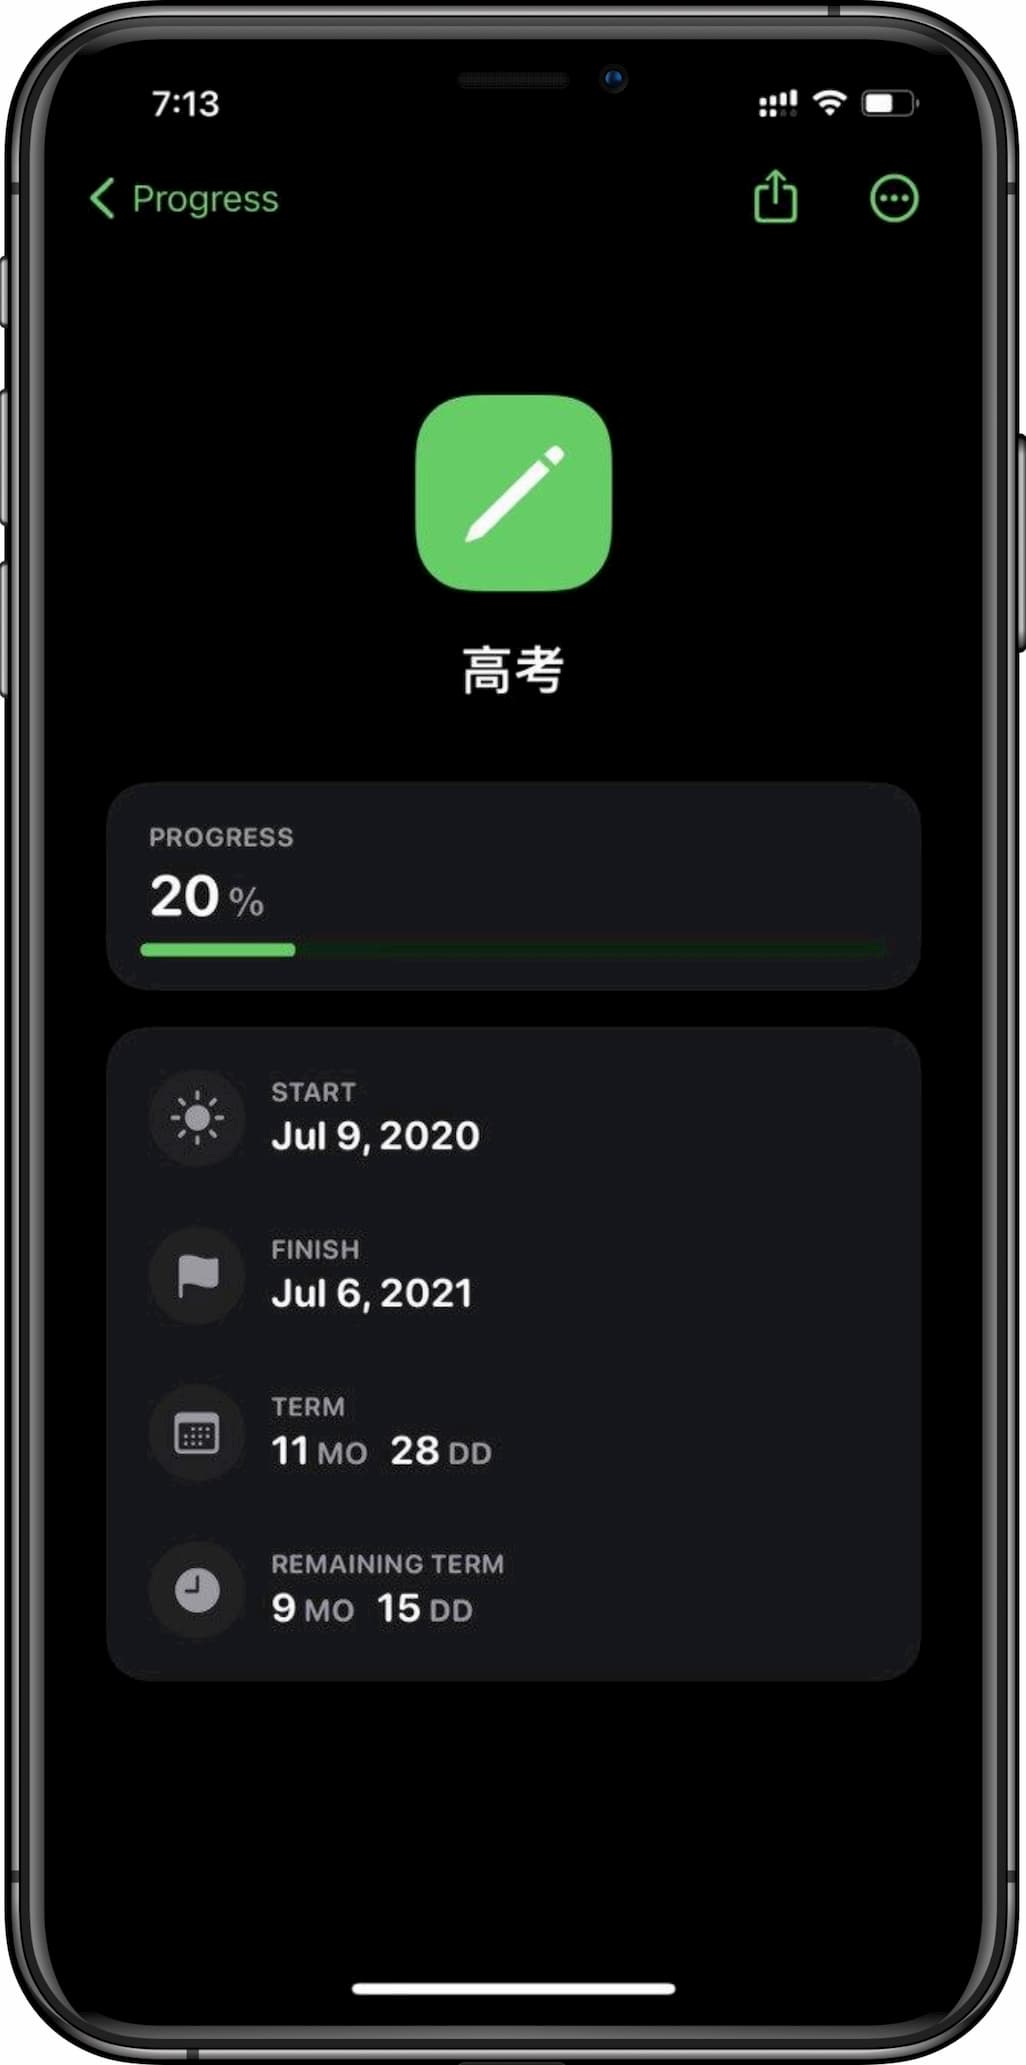 Progress - 用 iOS 14 的屏幕小组件显示时间进度[iPhone] 2